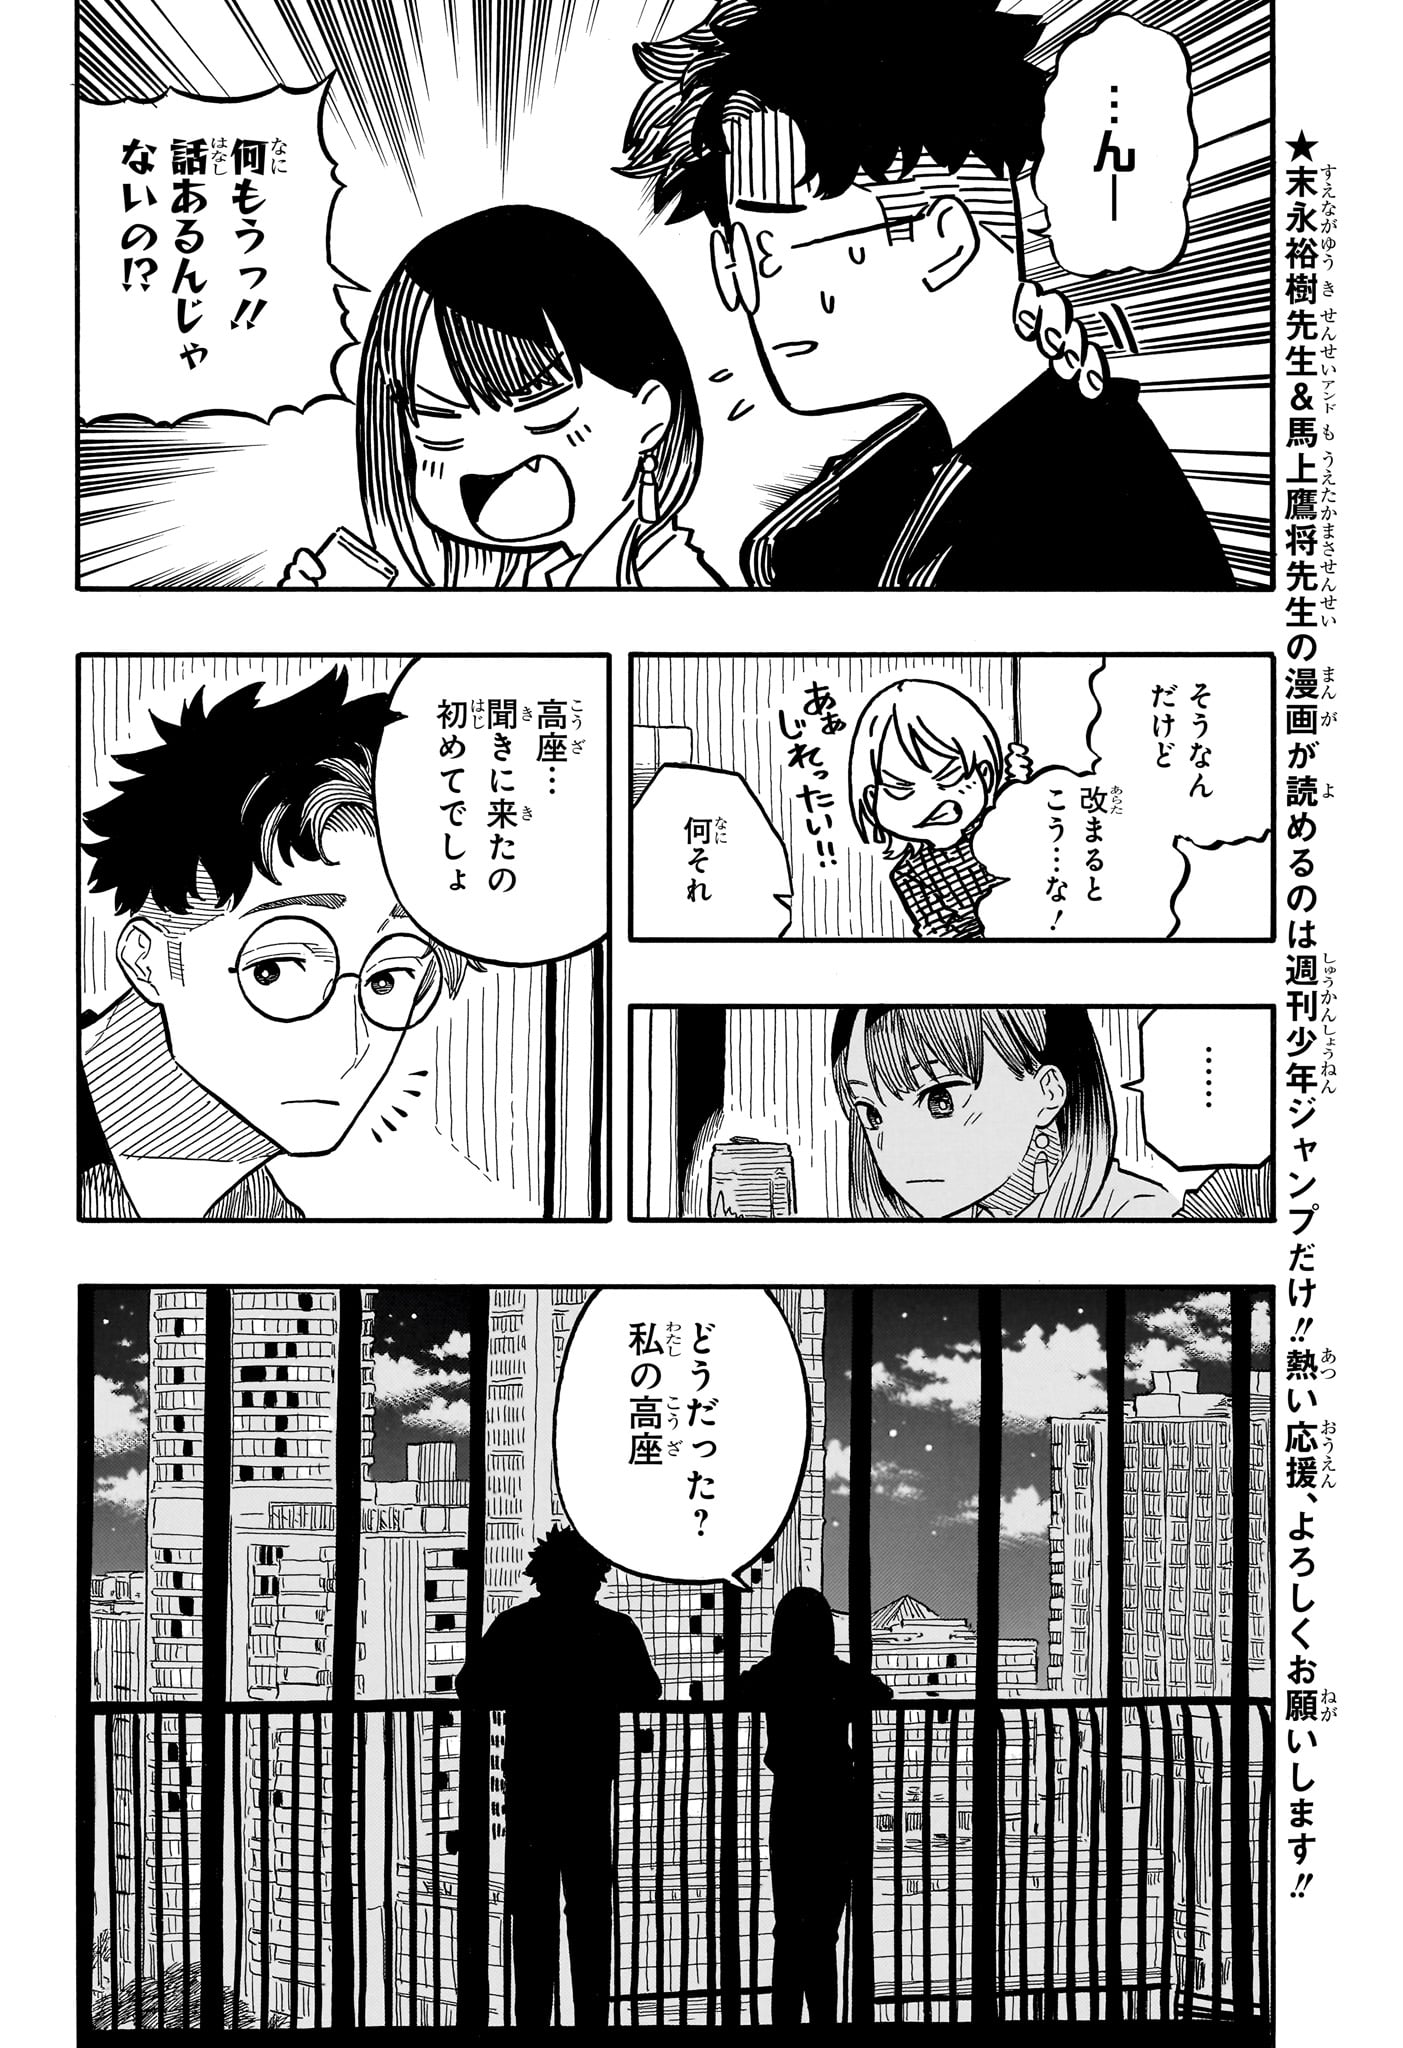 Akane-Banashi - Chapter 107 - Page 2